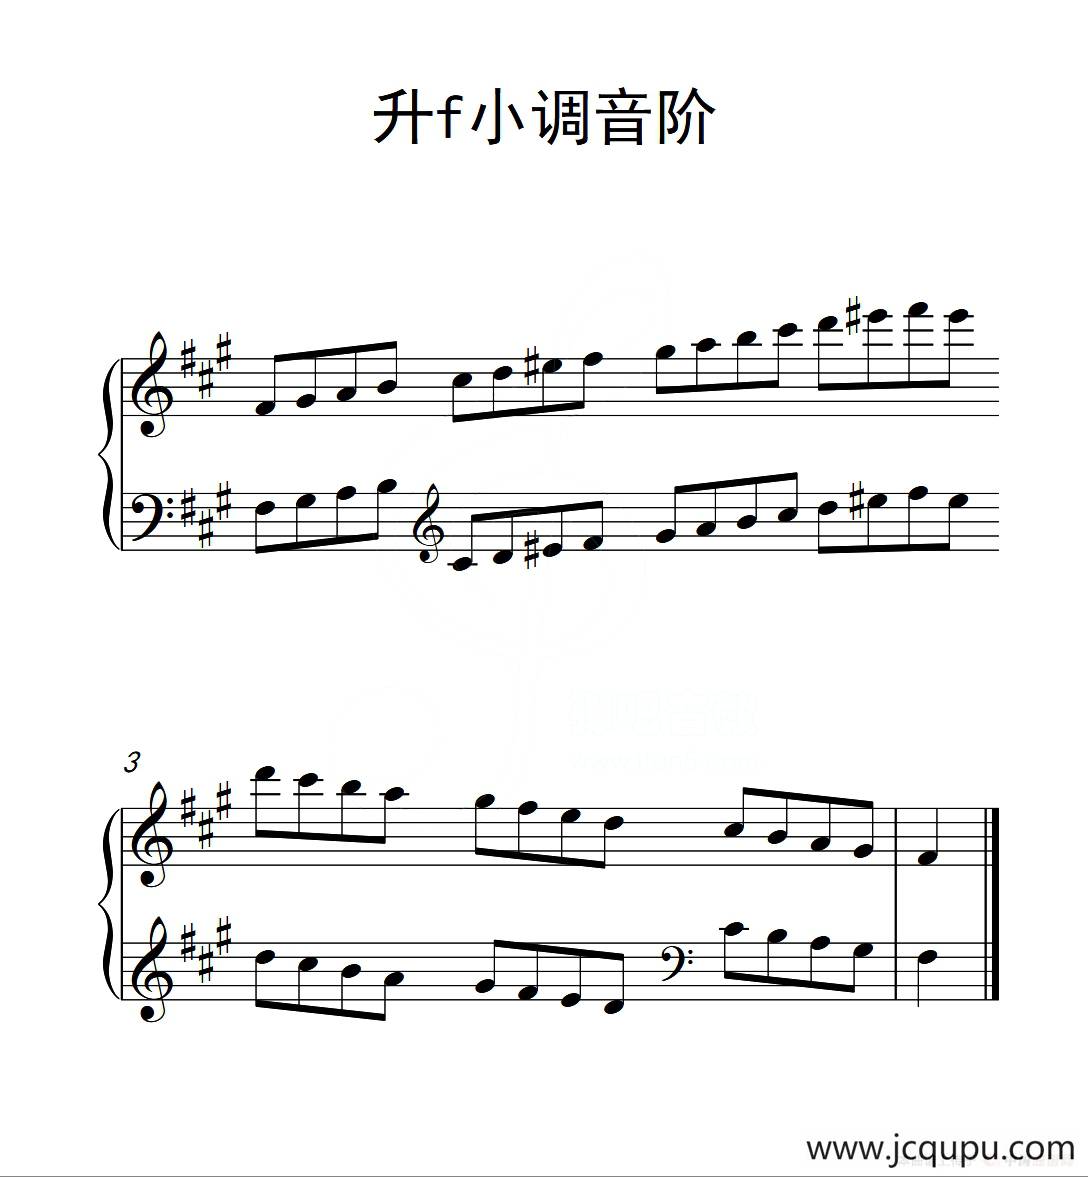 第二级 升f小调音阶(中国音乐学院钢琴考级作品1~6级)